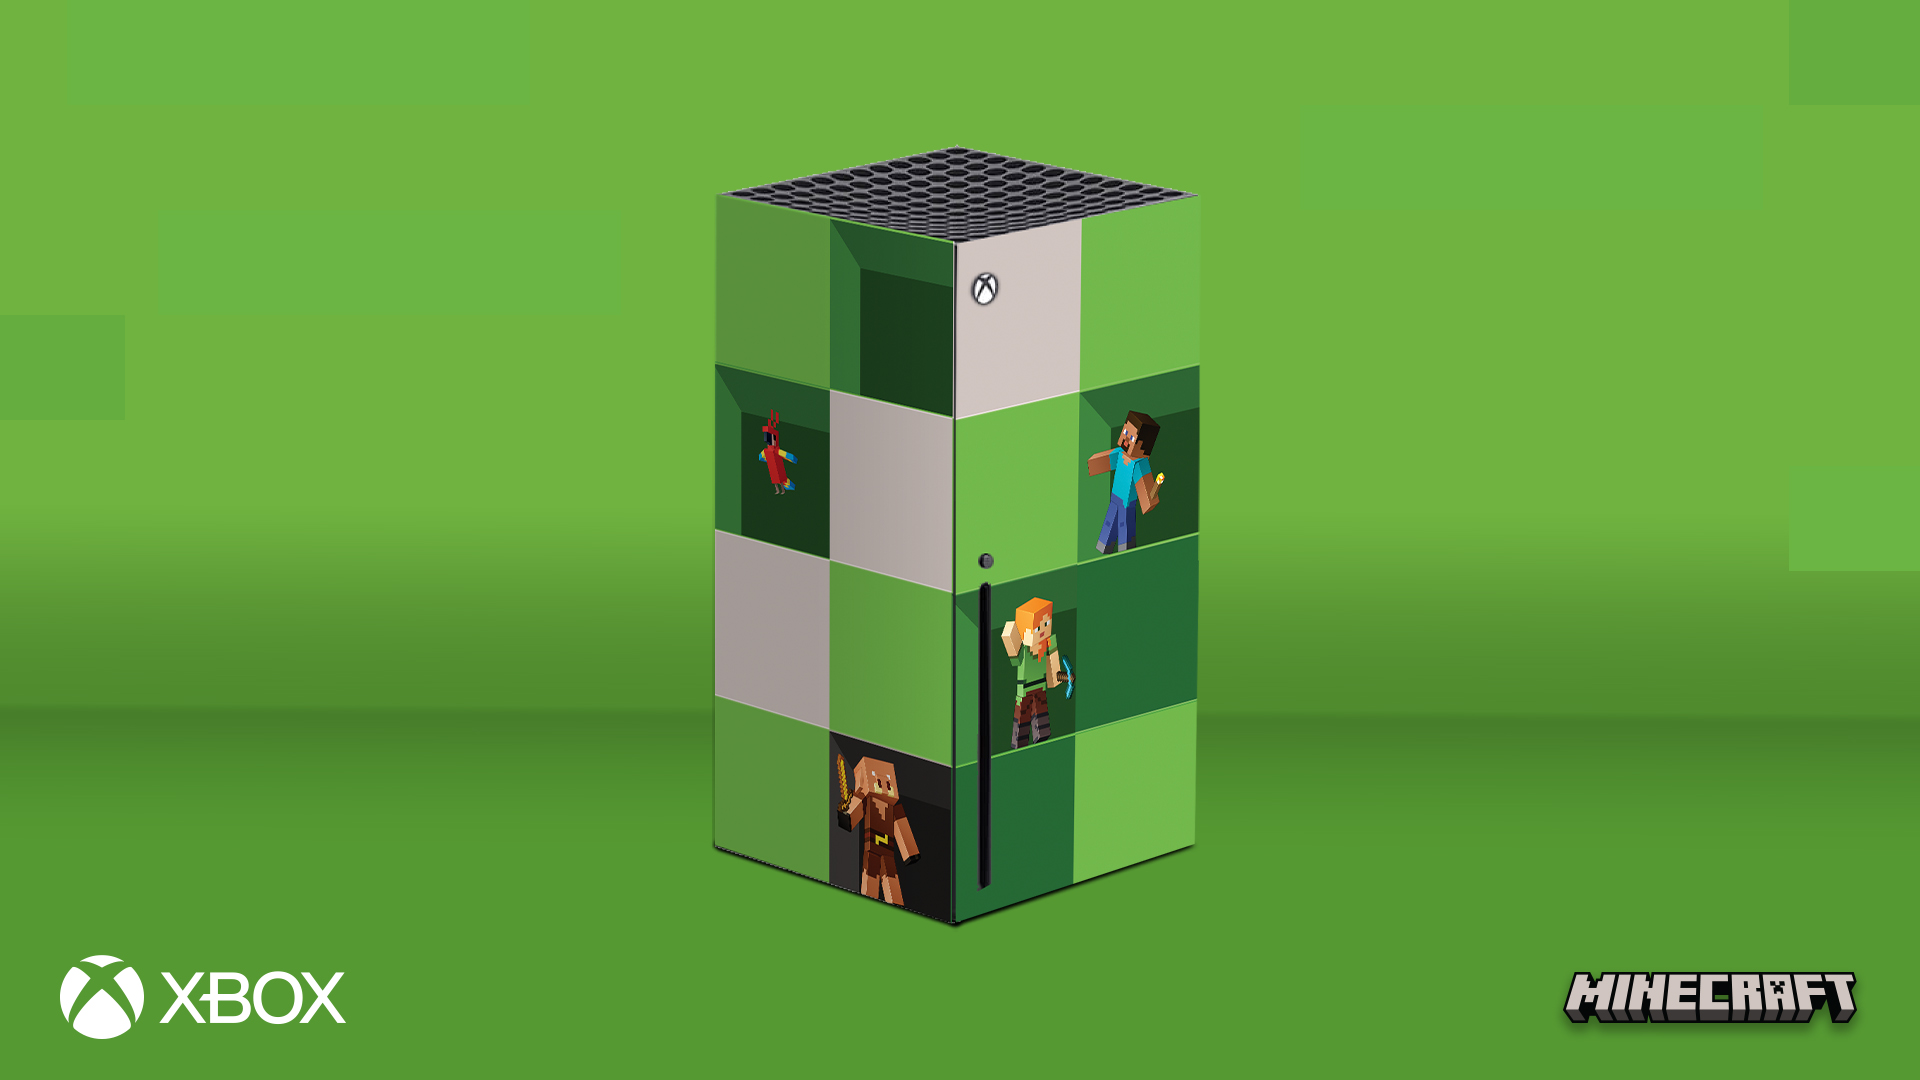 『Minecraft』15 周年記念! Xbox Series X ご購入者にスキンシールをプレゼント!